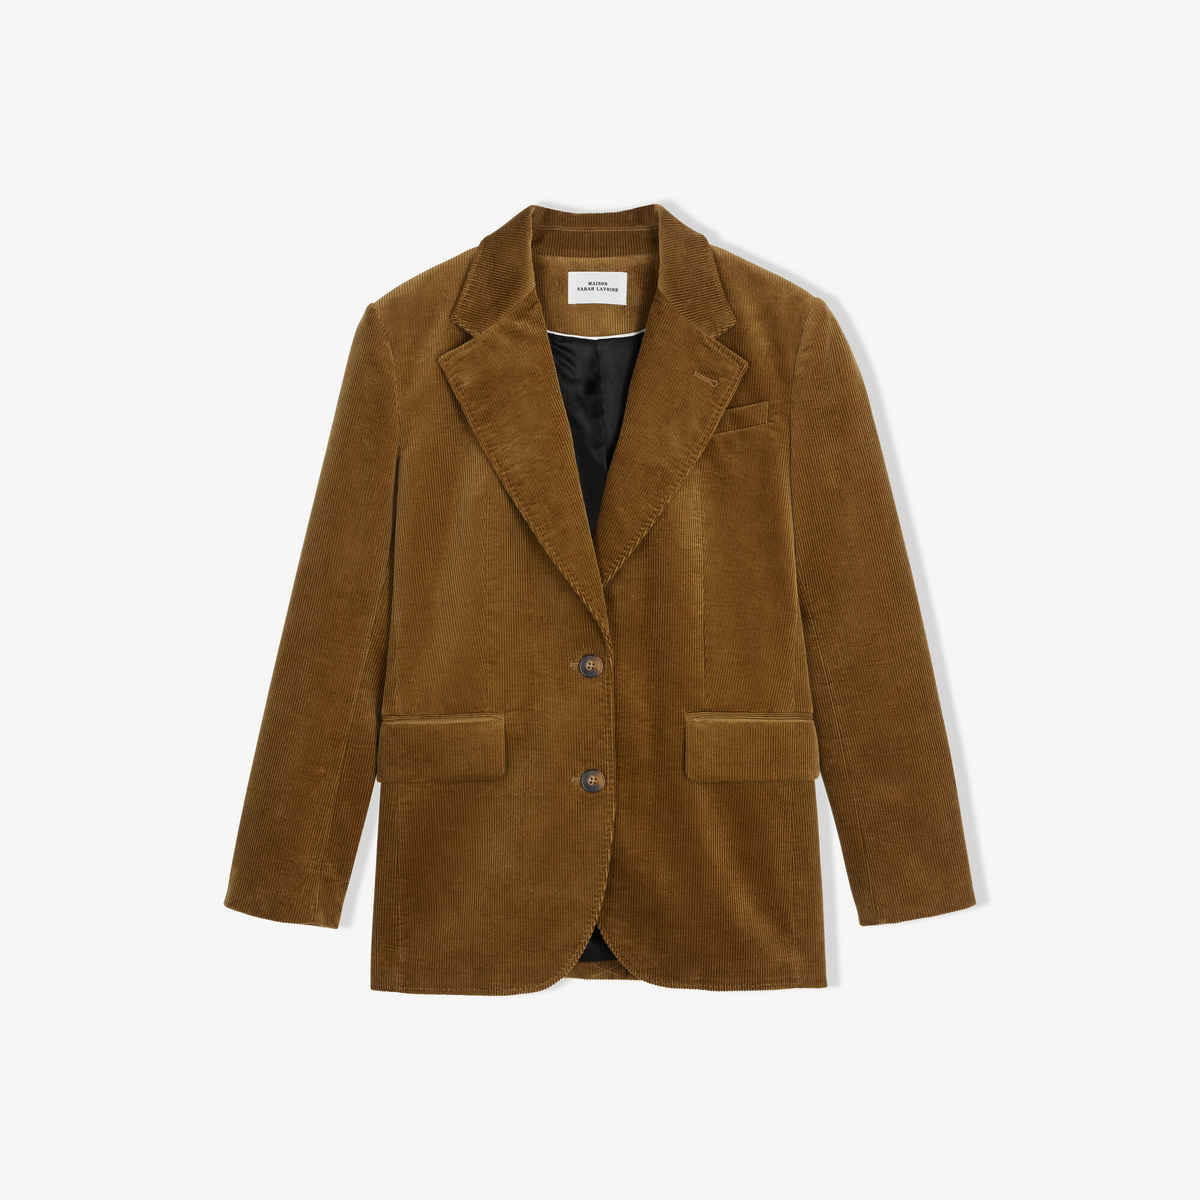 Saint-Honoré jacket, Mordoré - Ribbed velvet- 100% Cotton - image 1